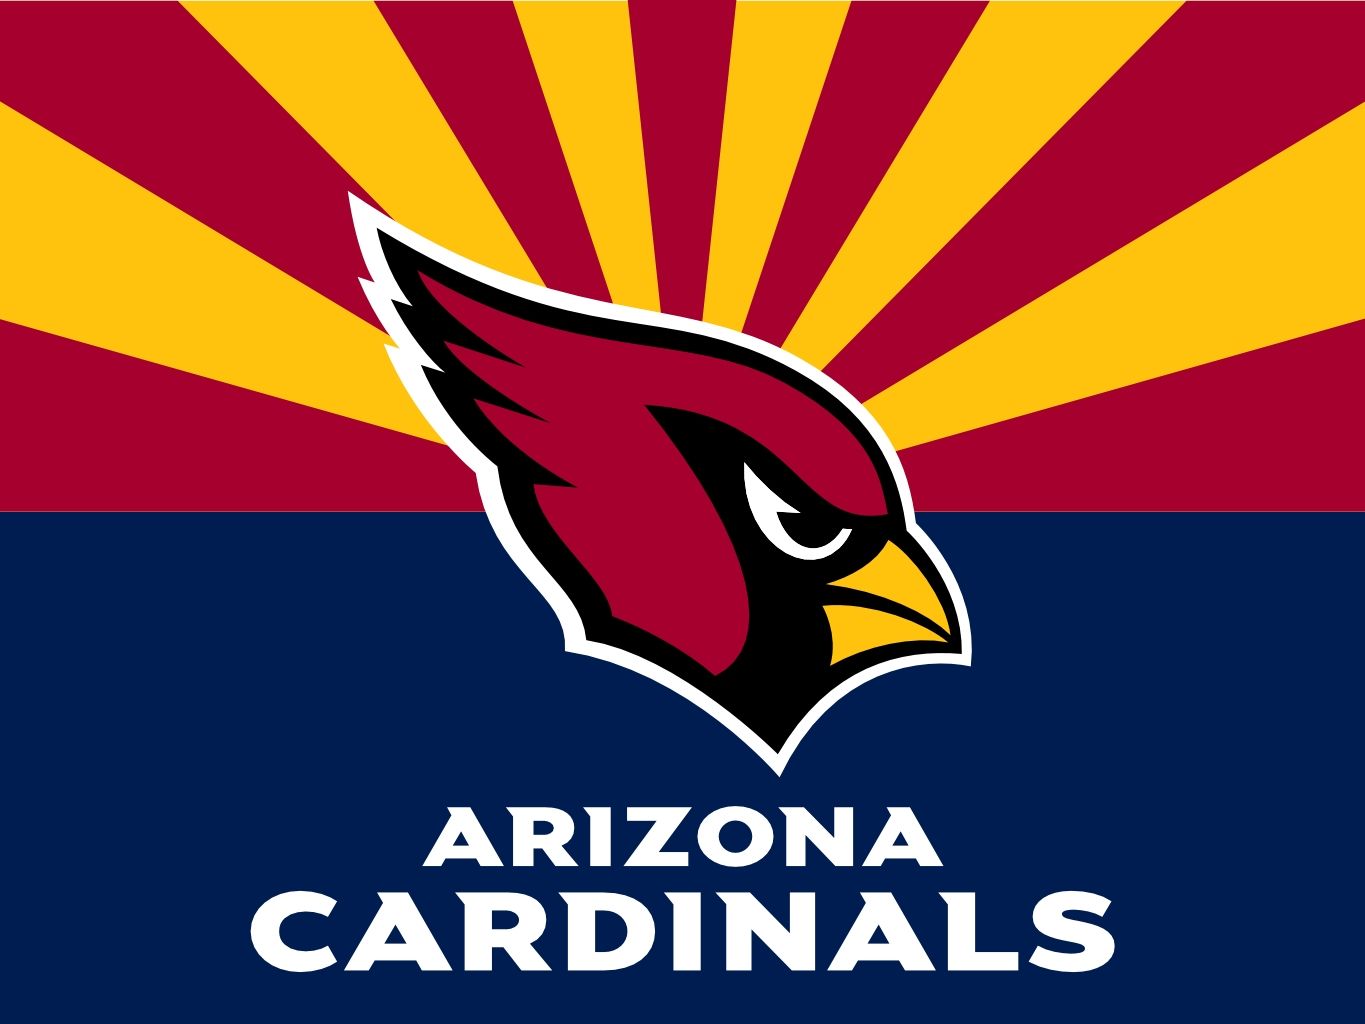 AZ cardinals. Arizona Cardinals Logo. Arizona cardinals, Arizona cardinals logo, Arizona cardinals football